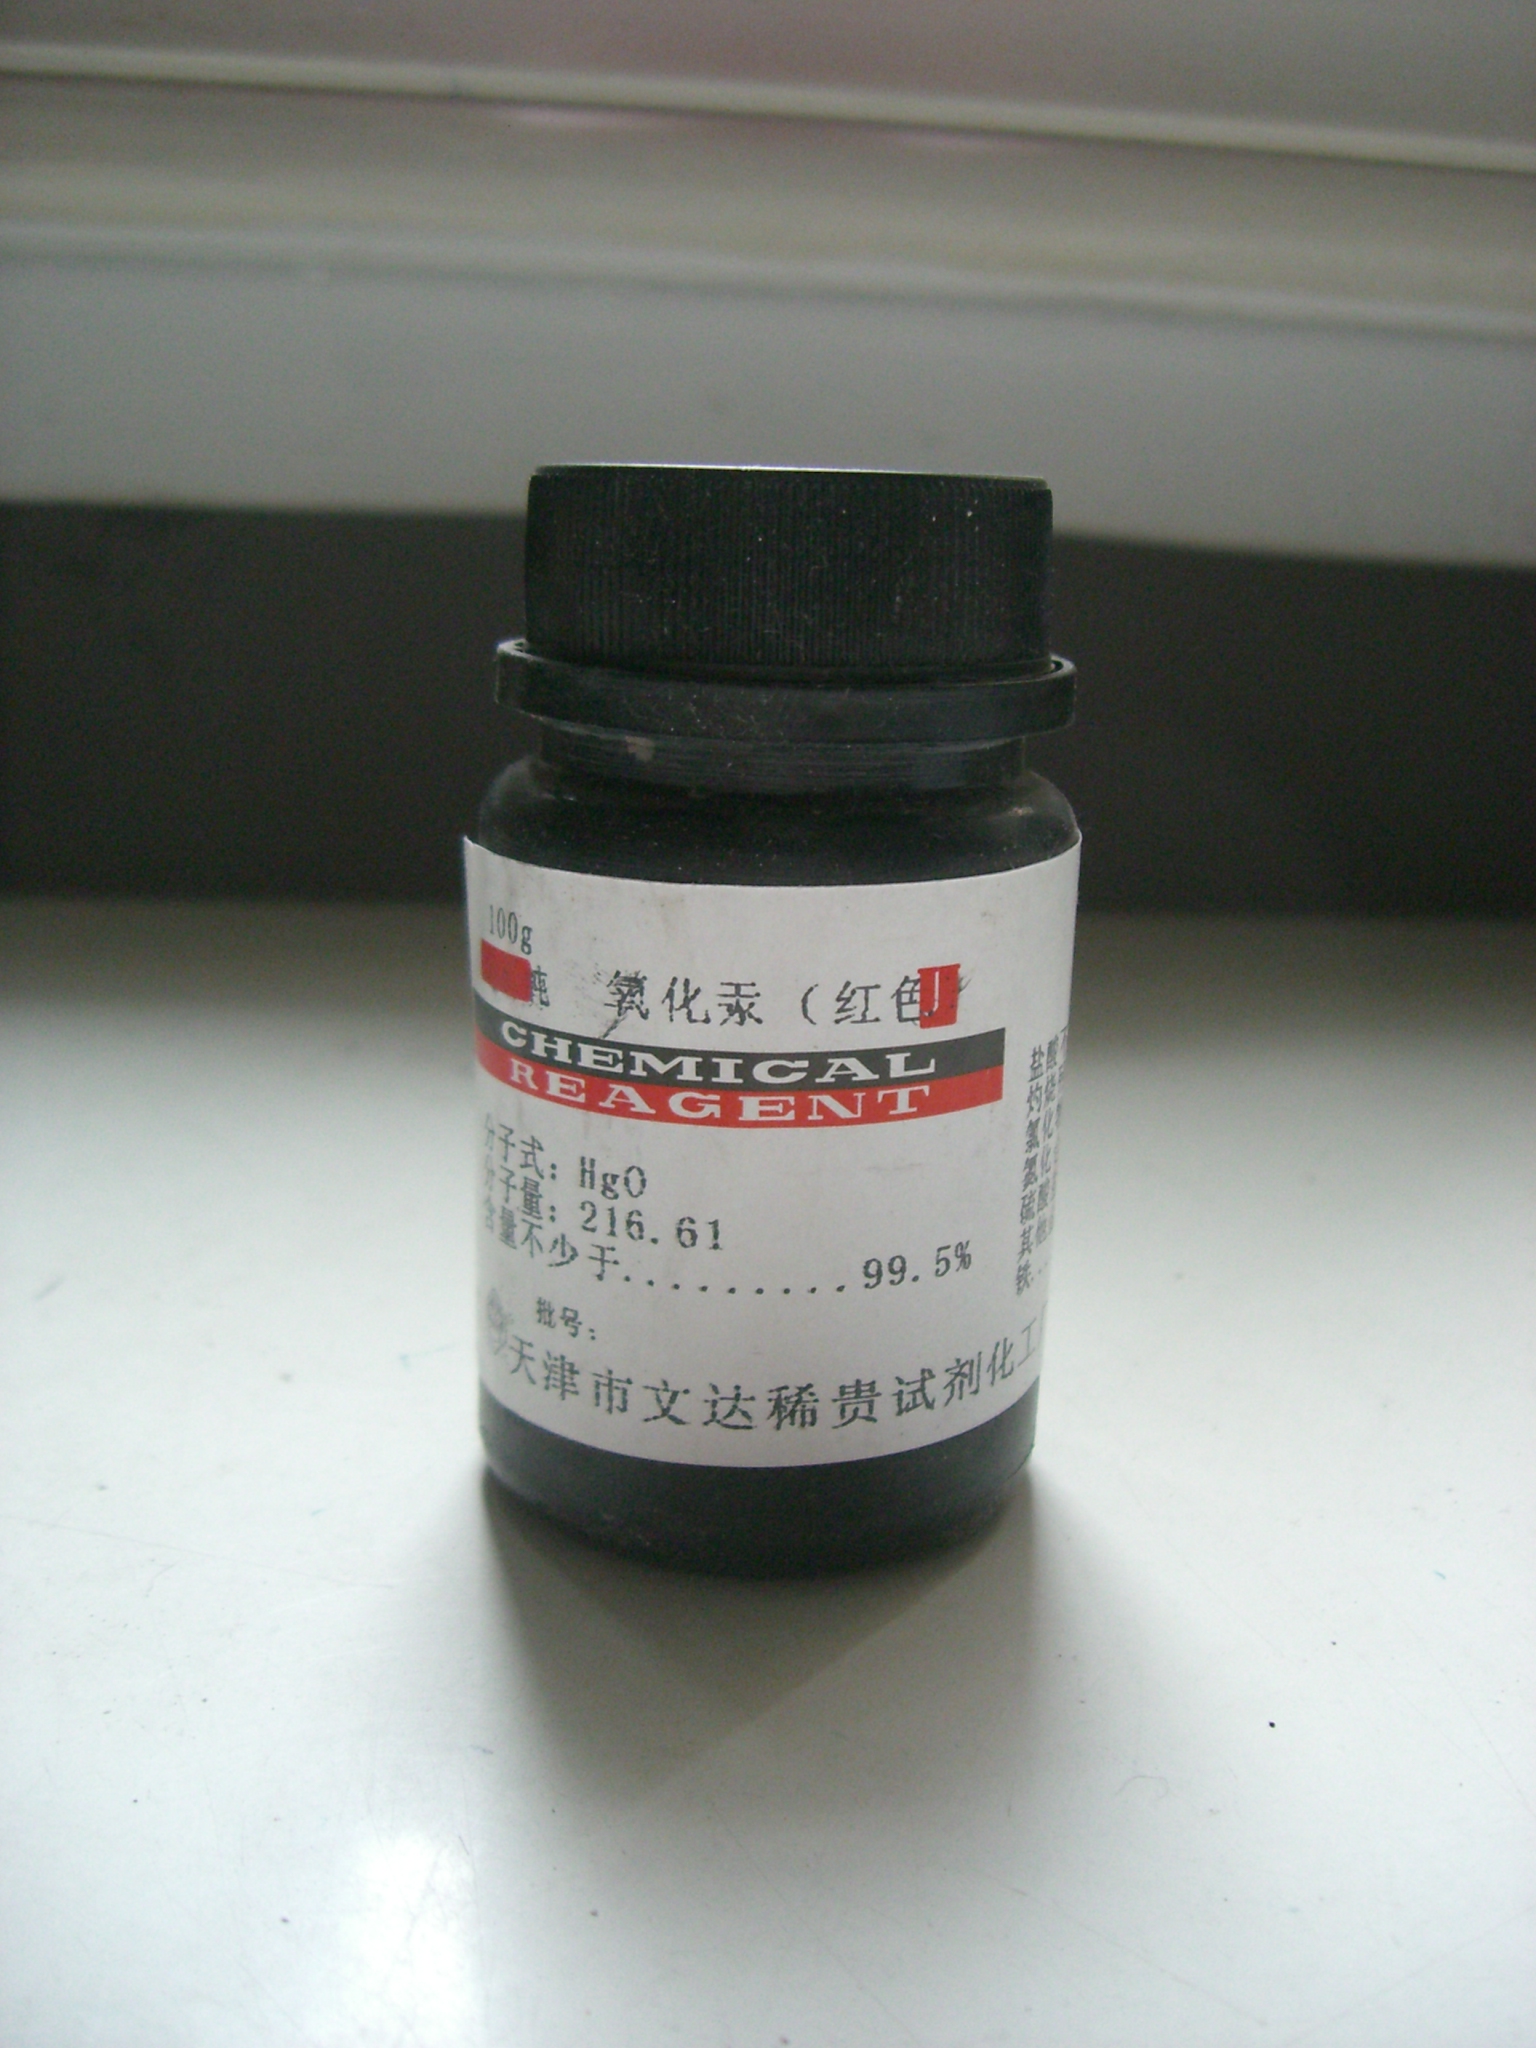 Mercury(II) oxide